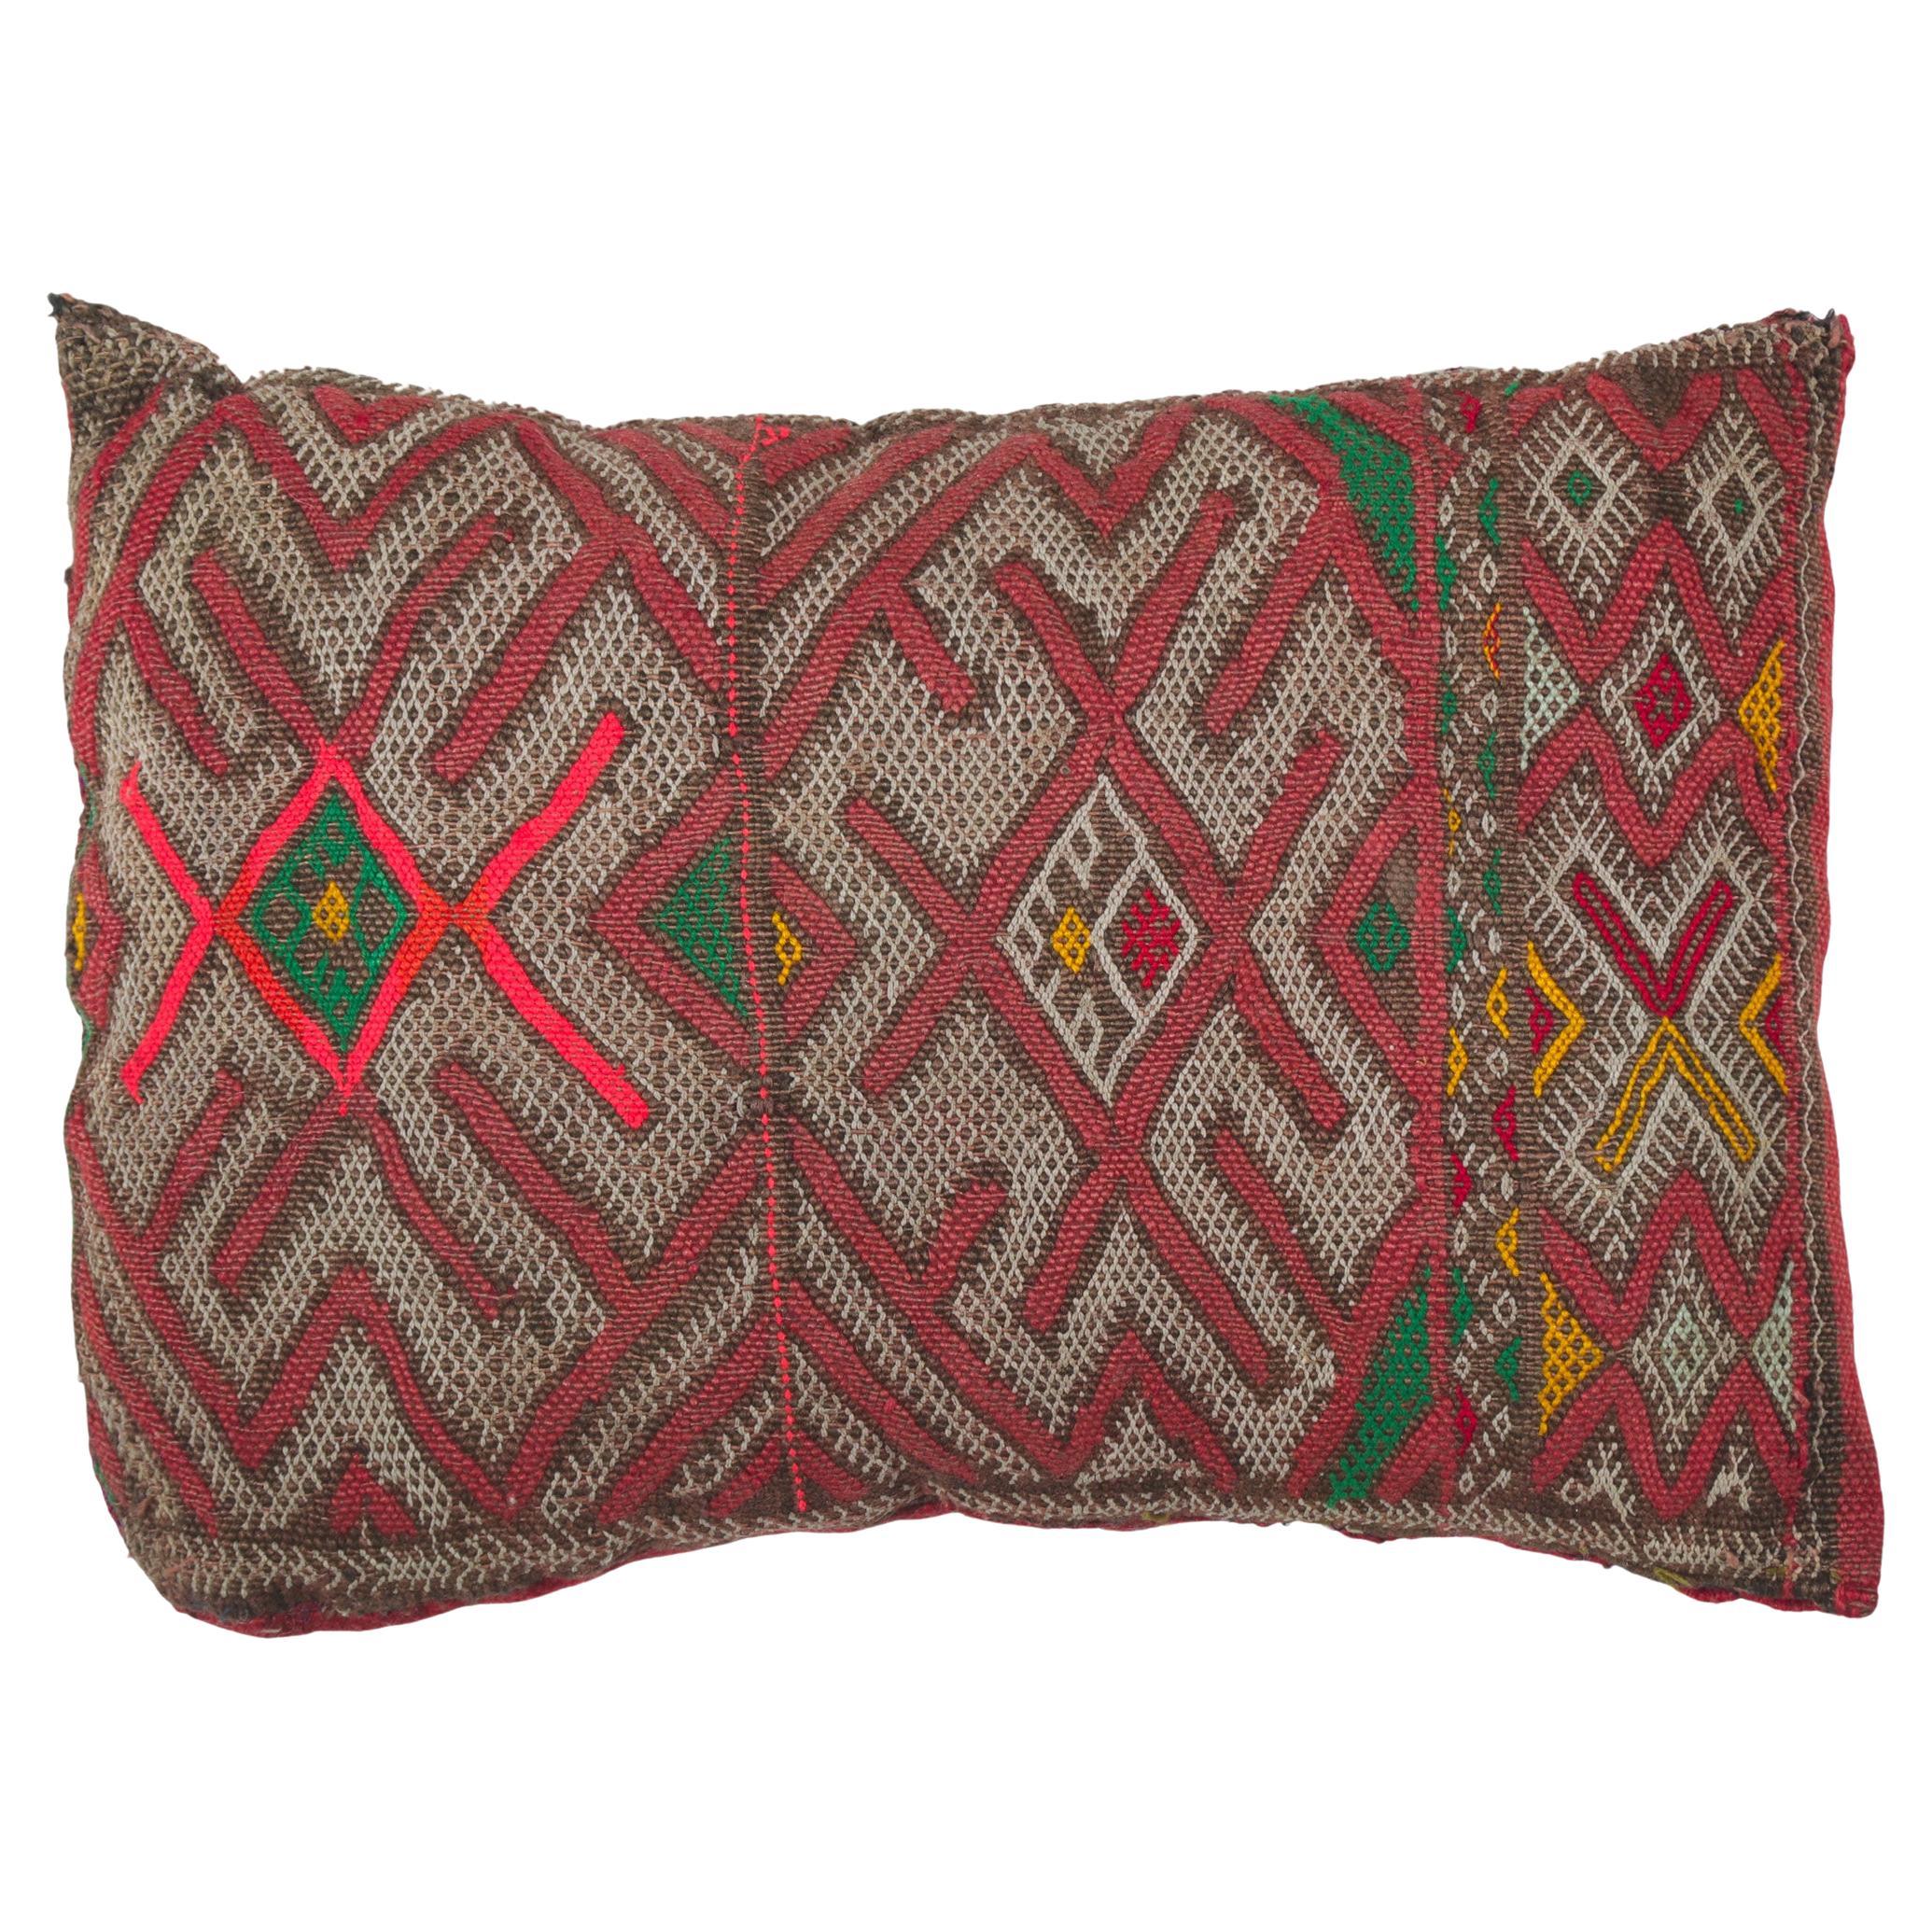 Vintage Zemmour Marokkanisches Teppichkissen von Berber Tribes of Morocco